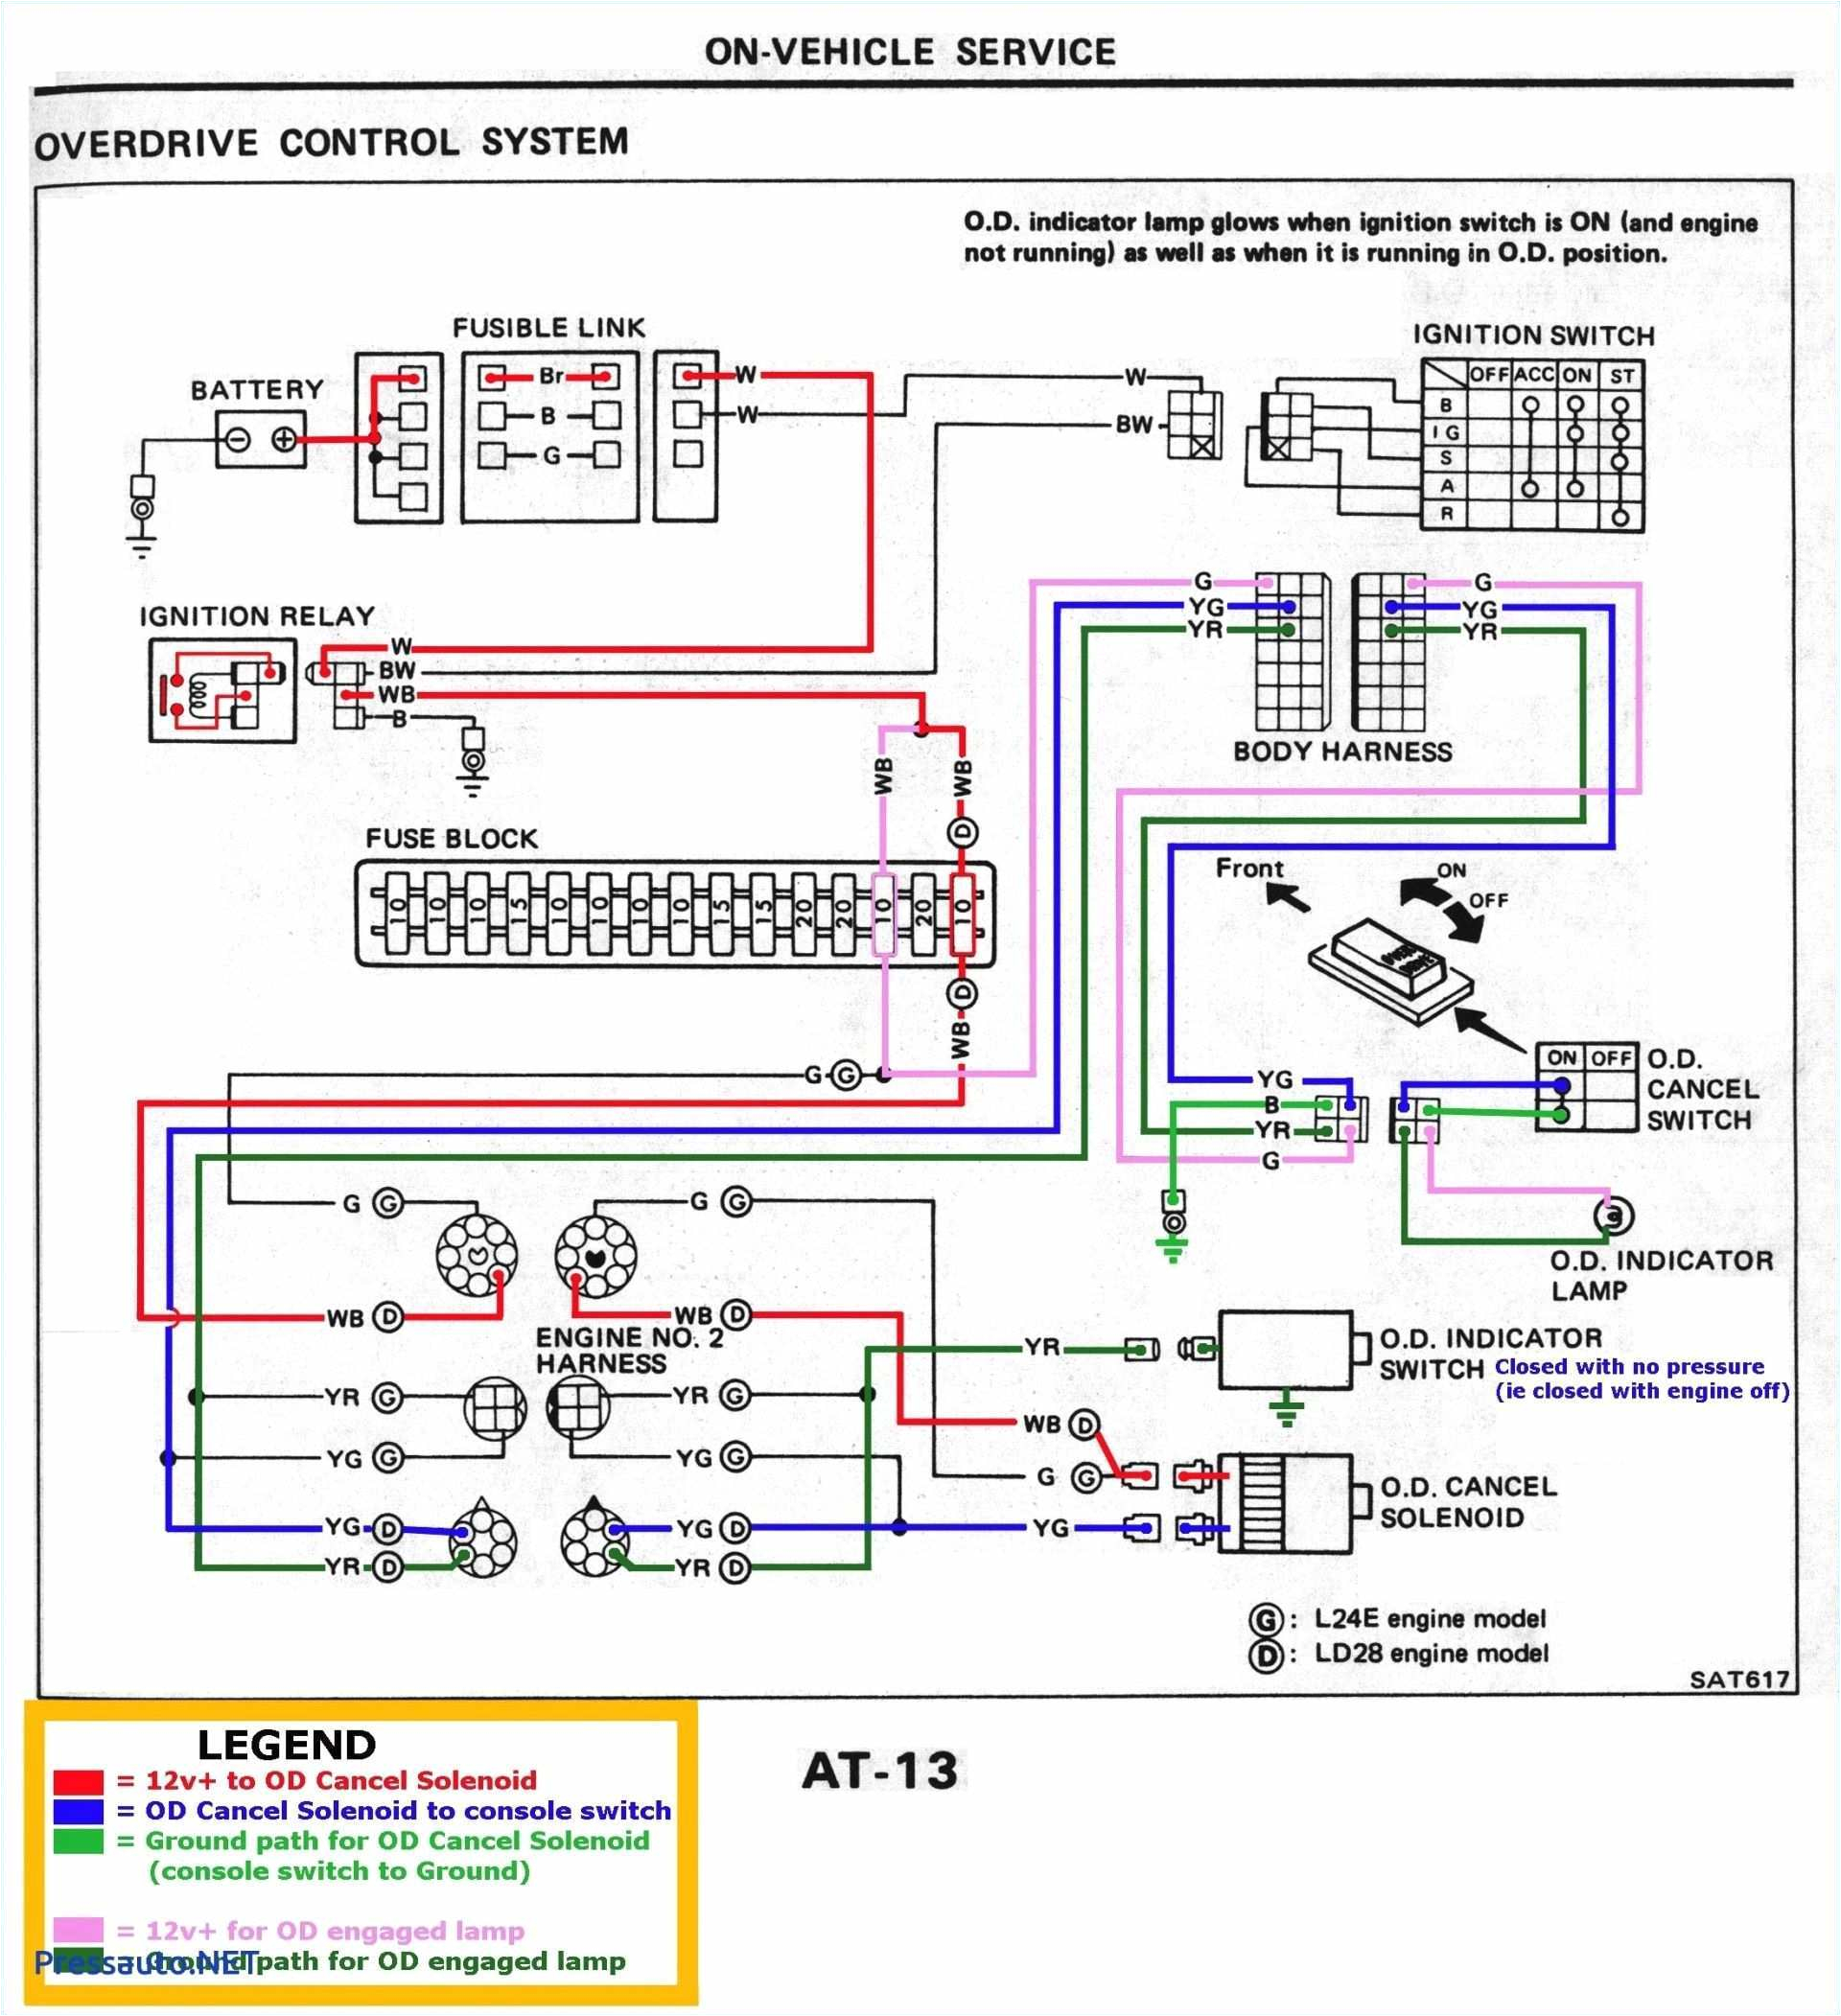 schematic wiring diagram ach 800 wiring diagram blog ach wiring diagram model 8